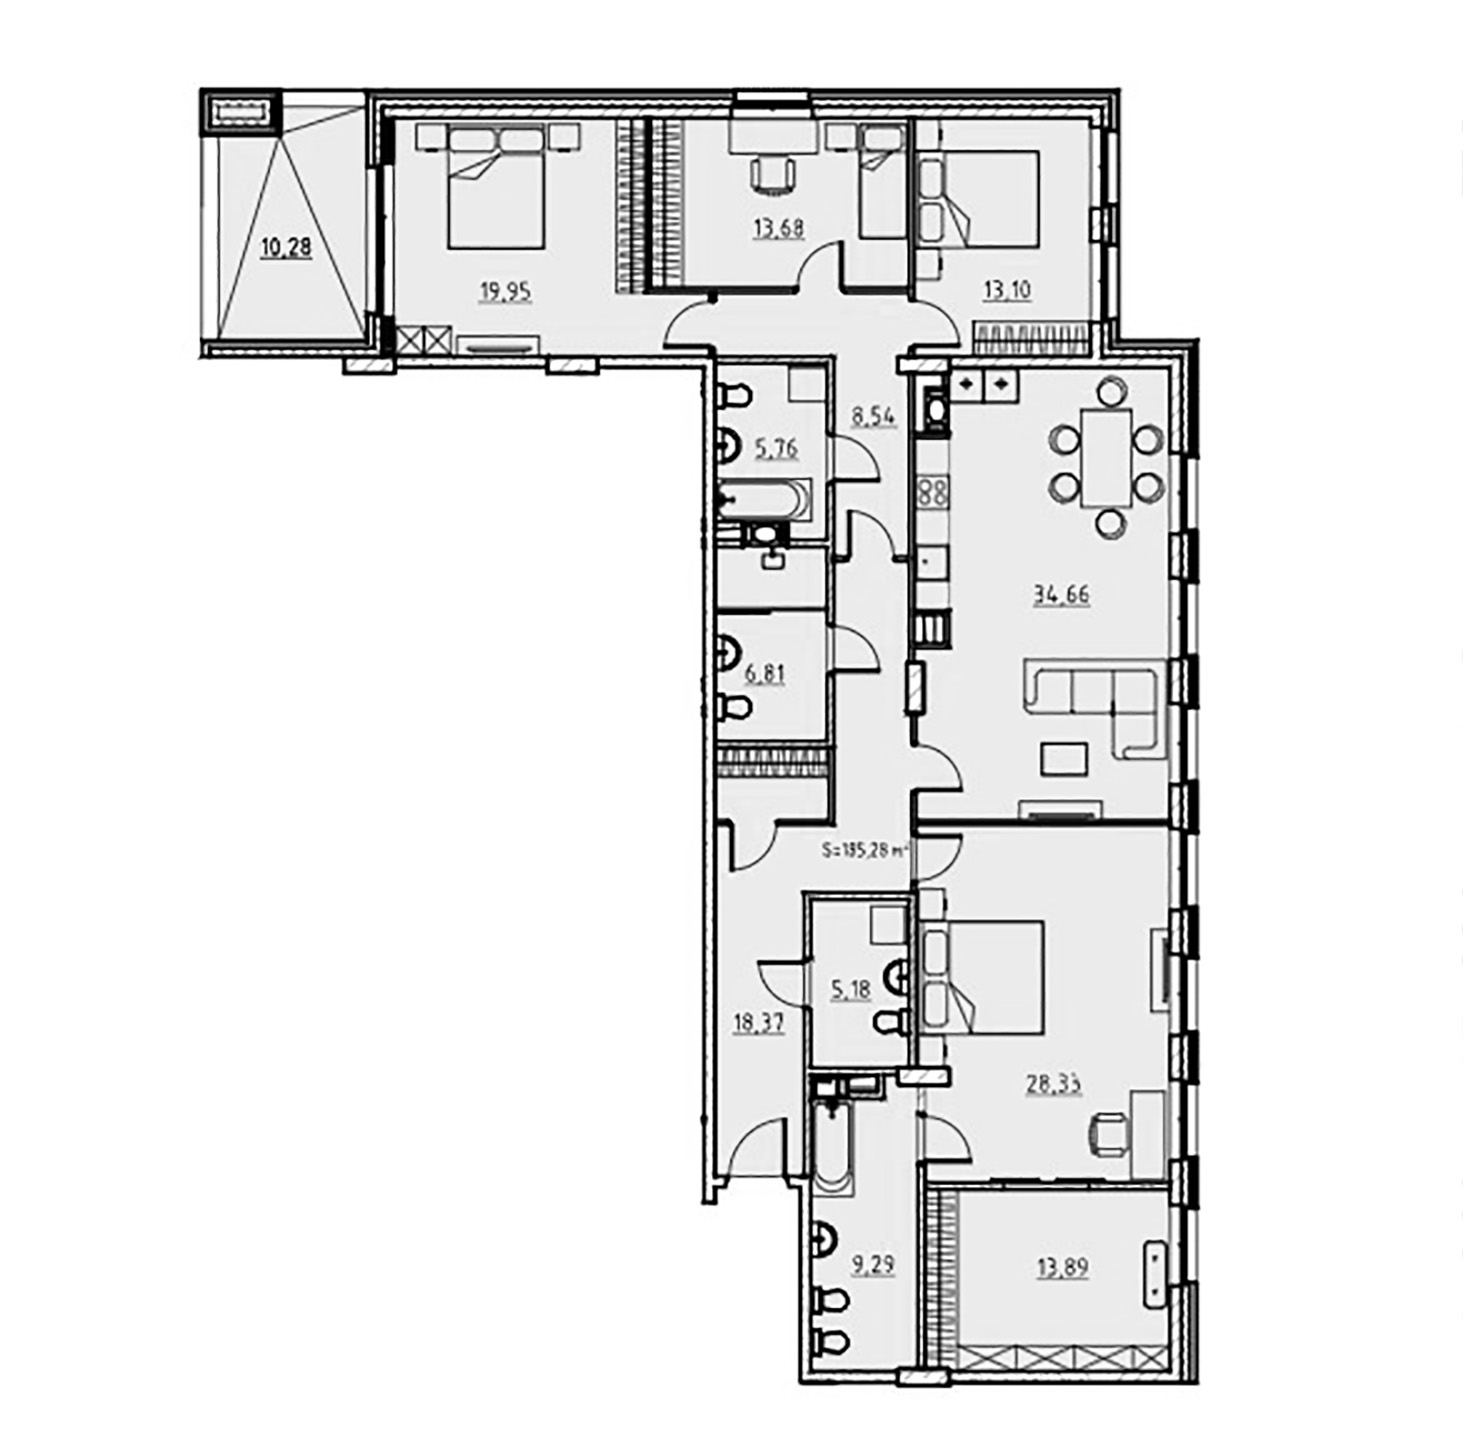 4-комнатная квартира  №49 в Манхэттен: 185.17 м², этаж 3 - купить в Санкт-Петербурге